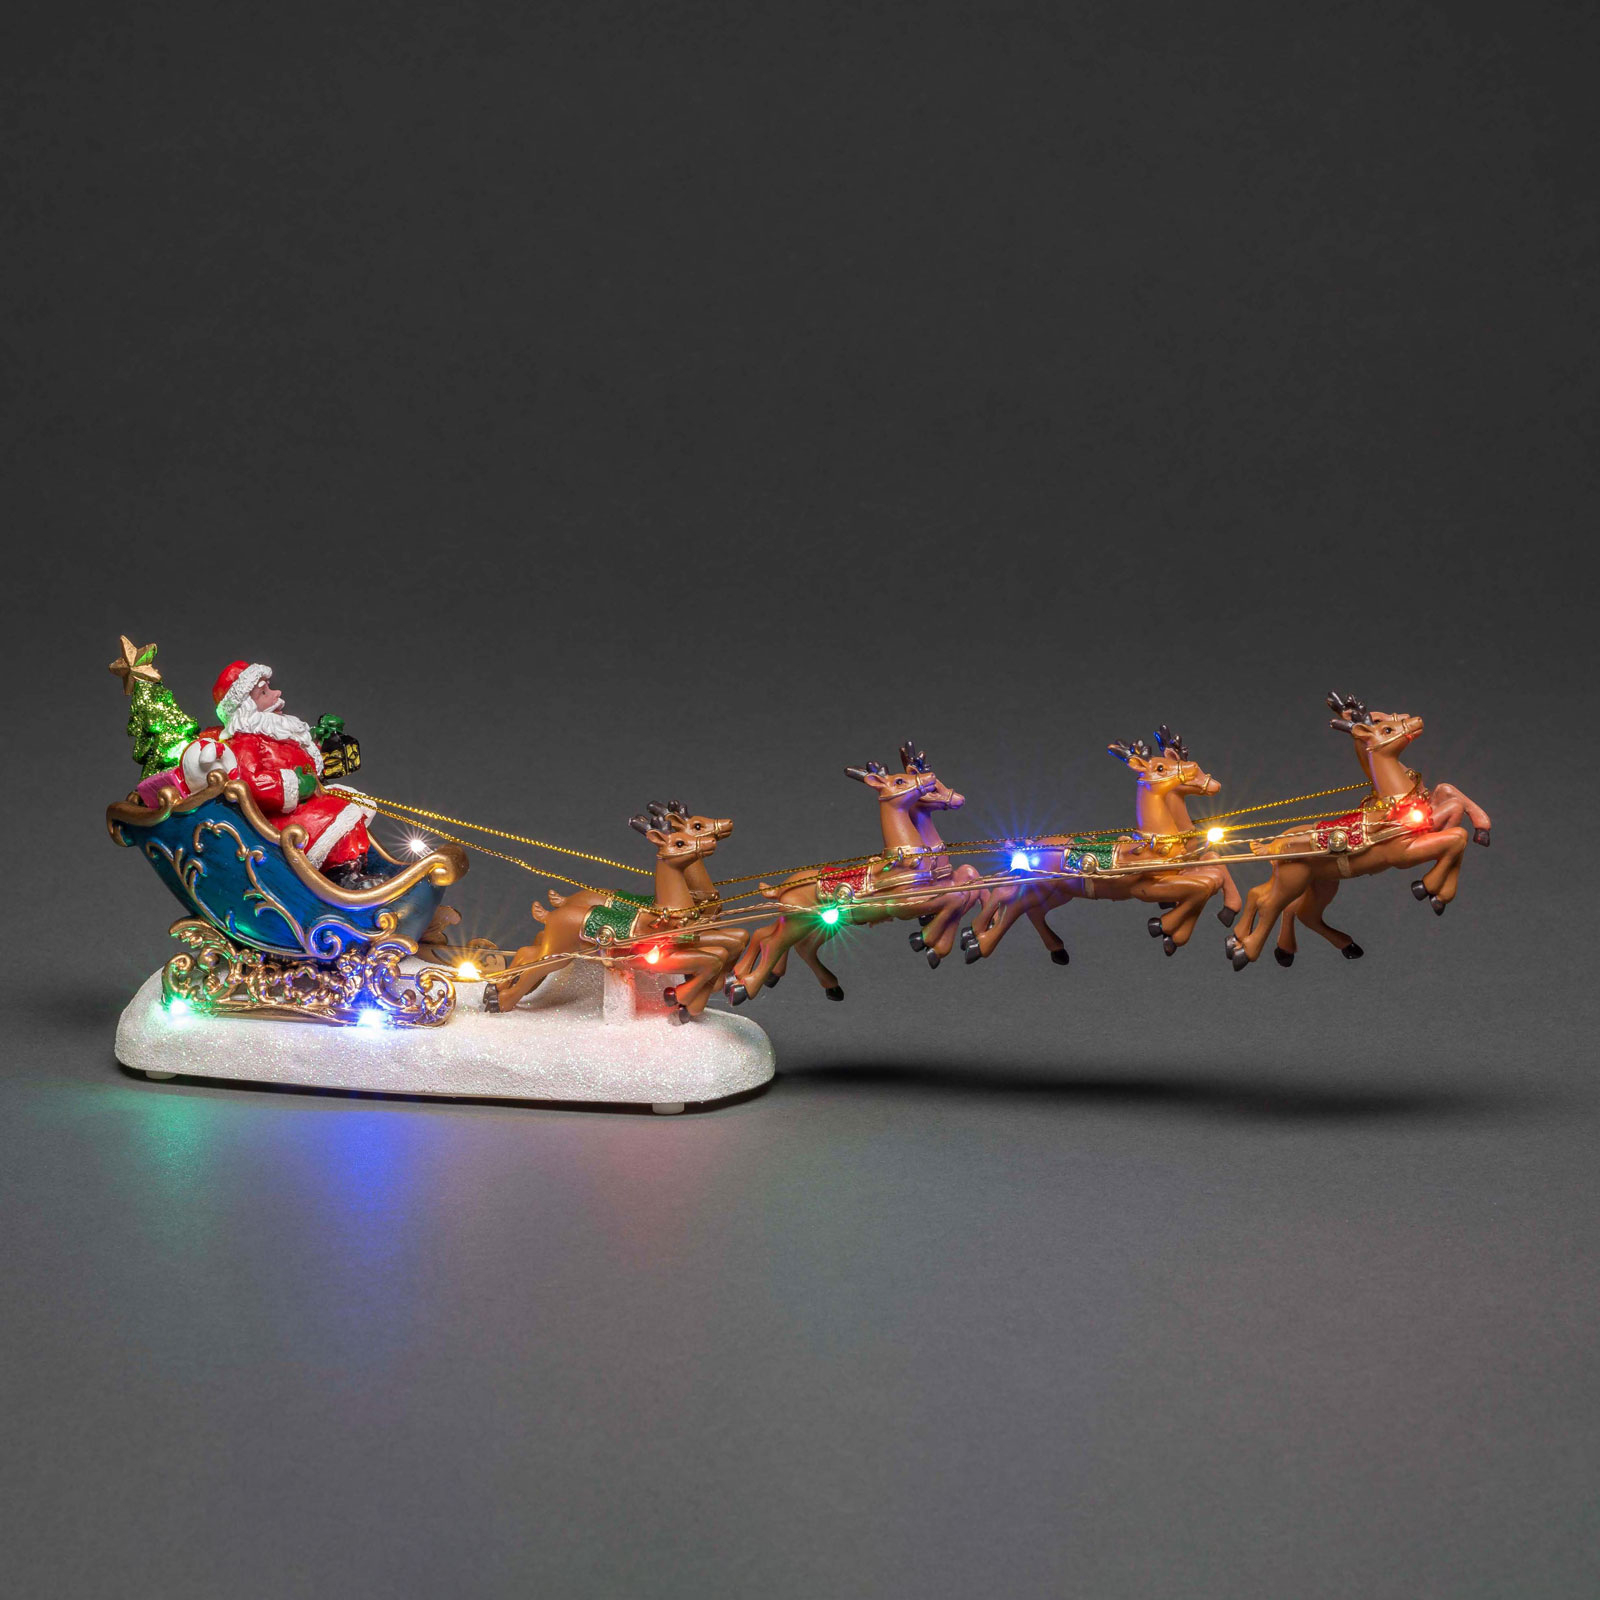 LED-Szenerie Weihnachtsmann im Schlitten